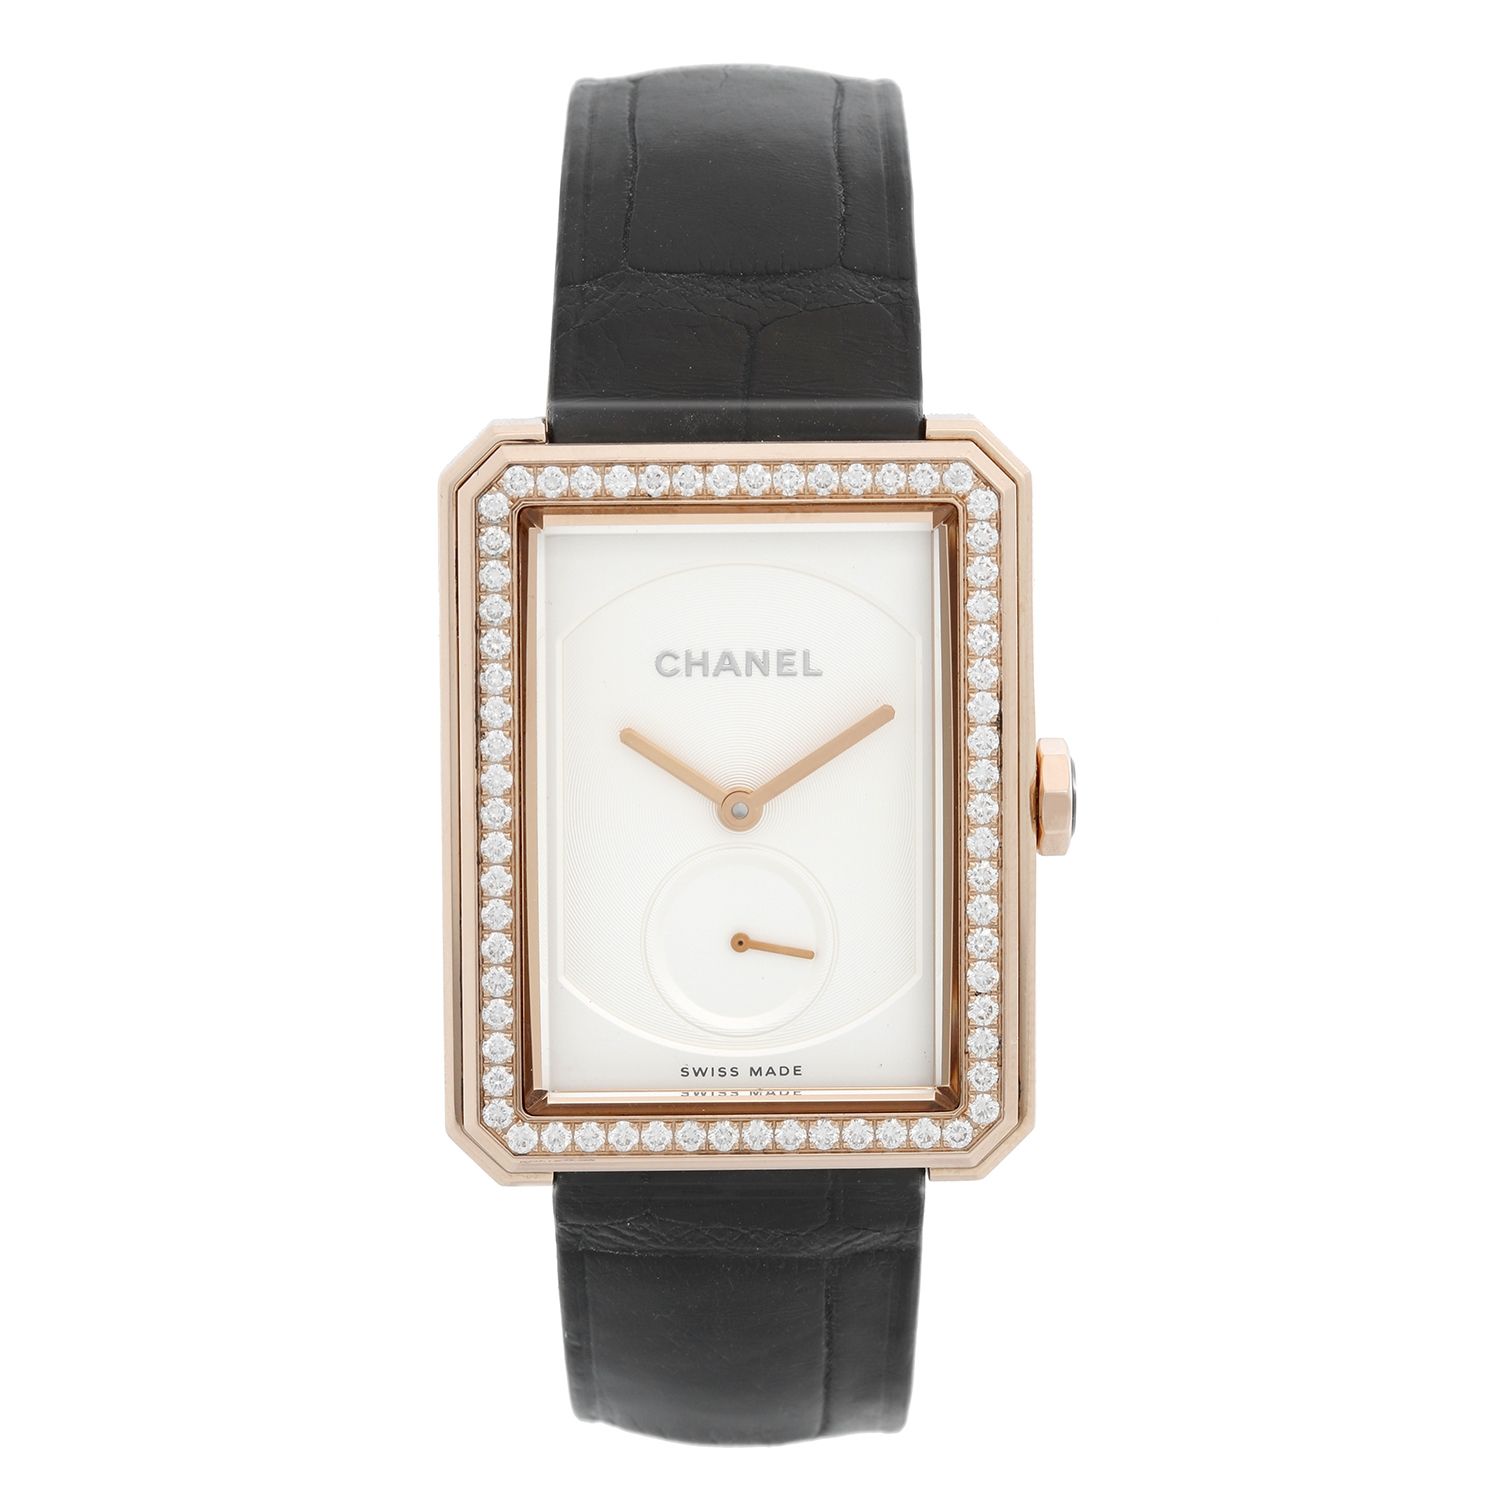 Chanel Boy-Friend Beige Gold Tweed Watch For Sale – AAA